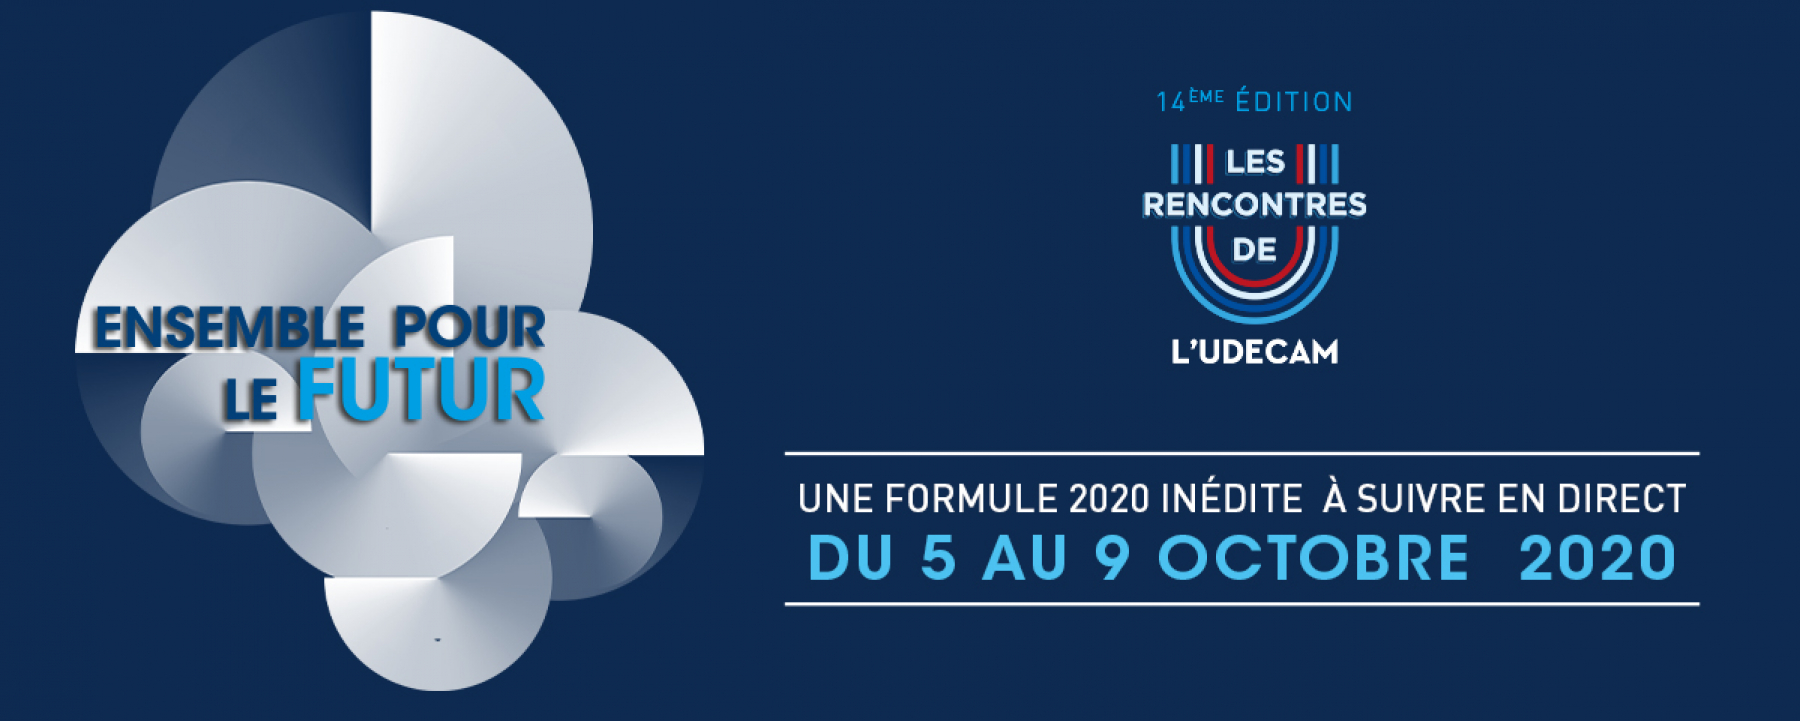 14e Rencontres de l'Udecam, une formule inédite à suivre en direct du 5 au 9 octobre 2020